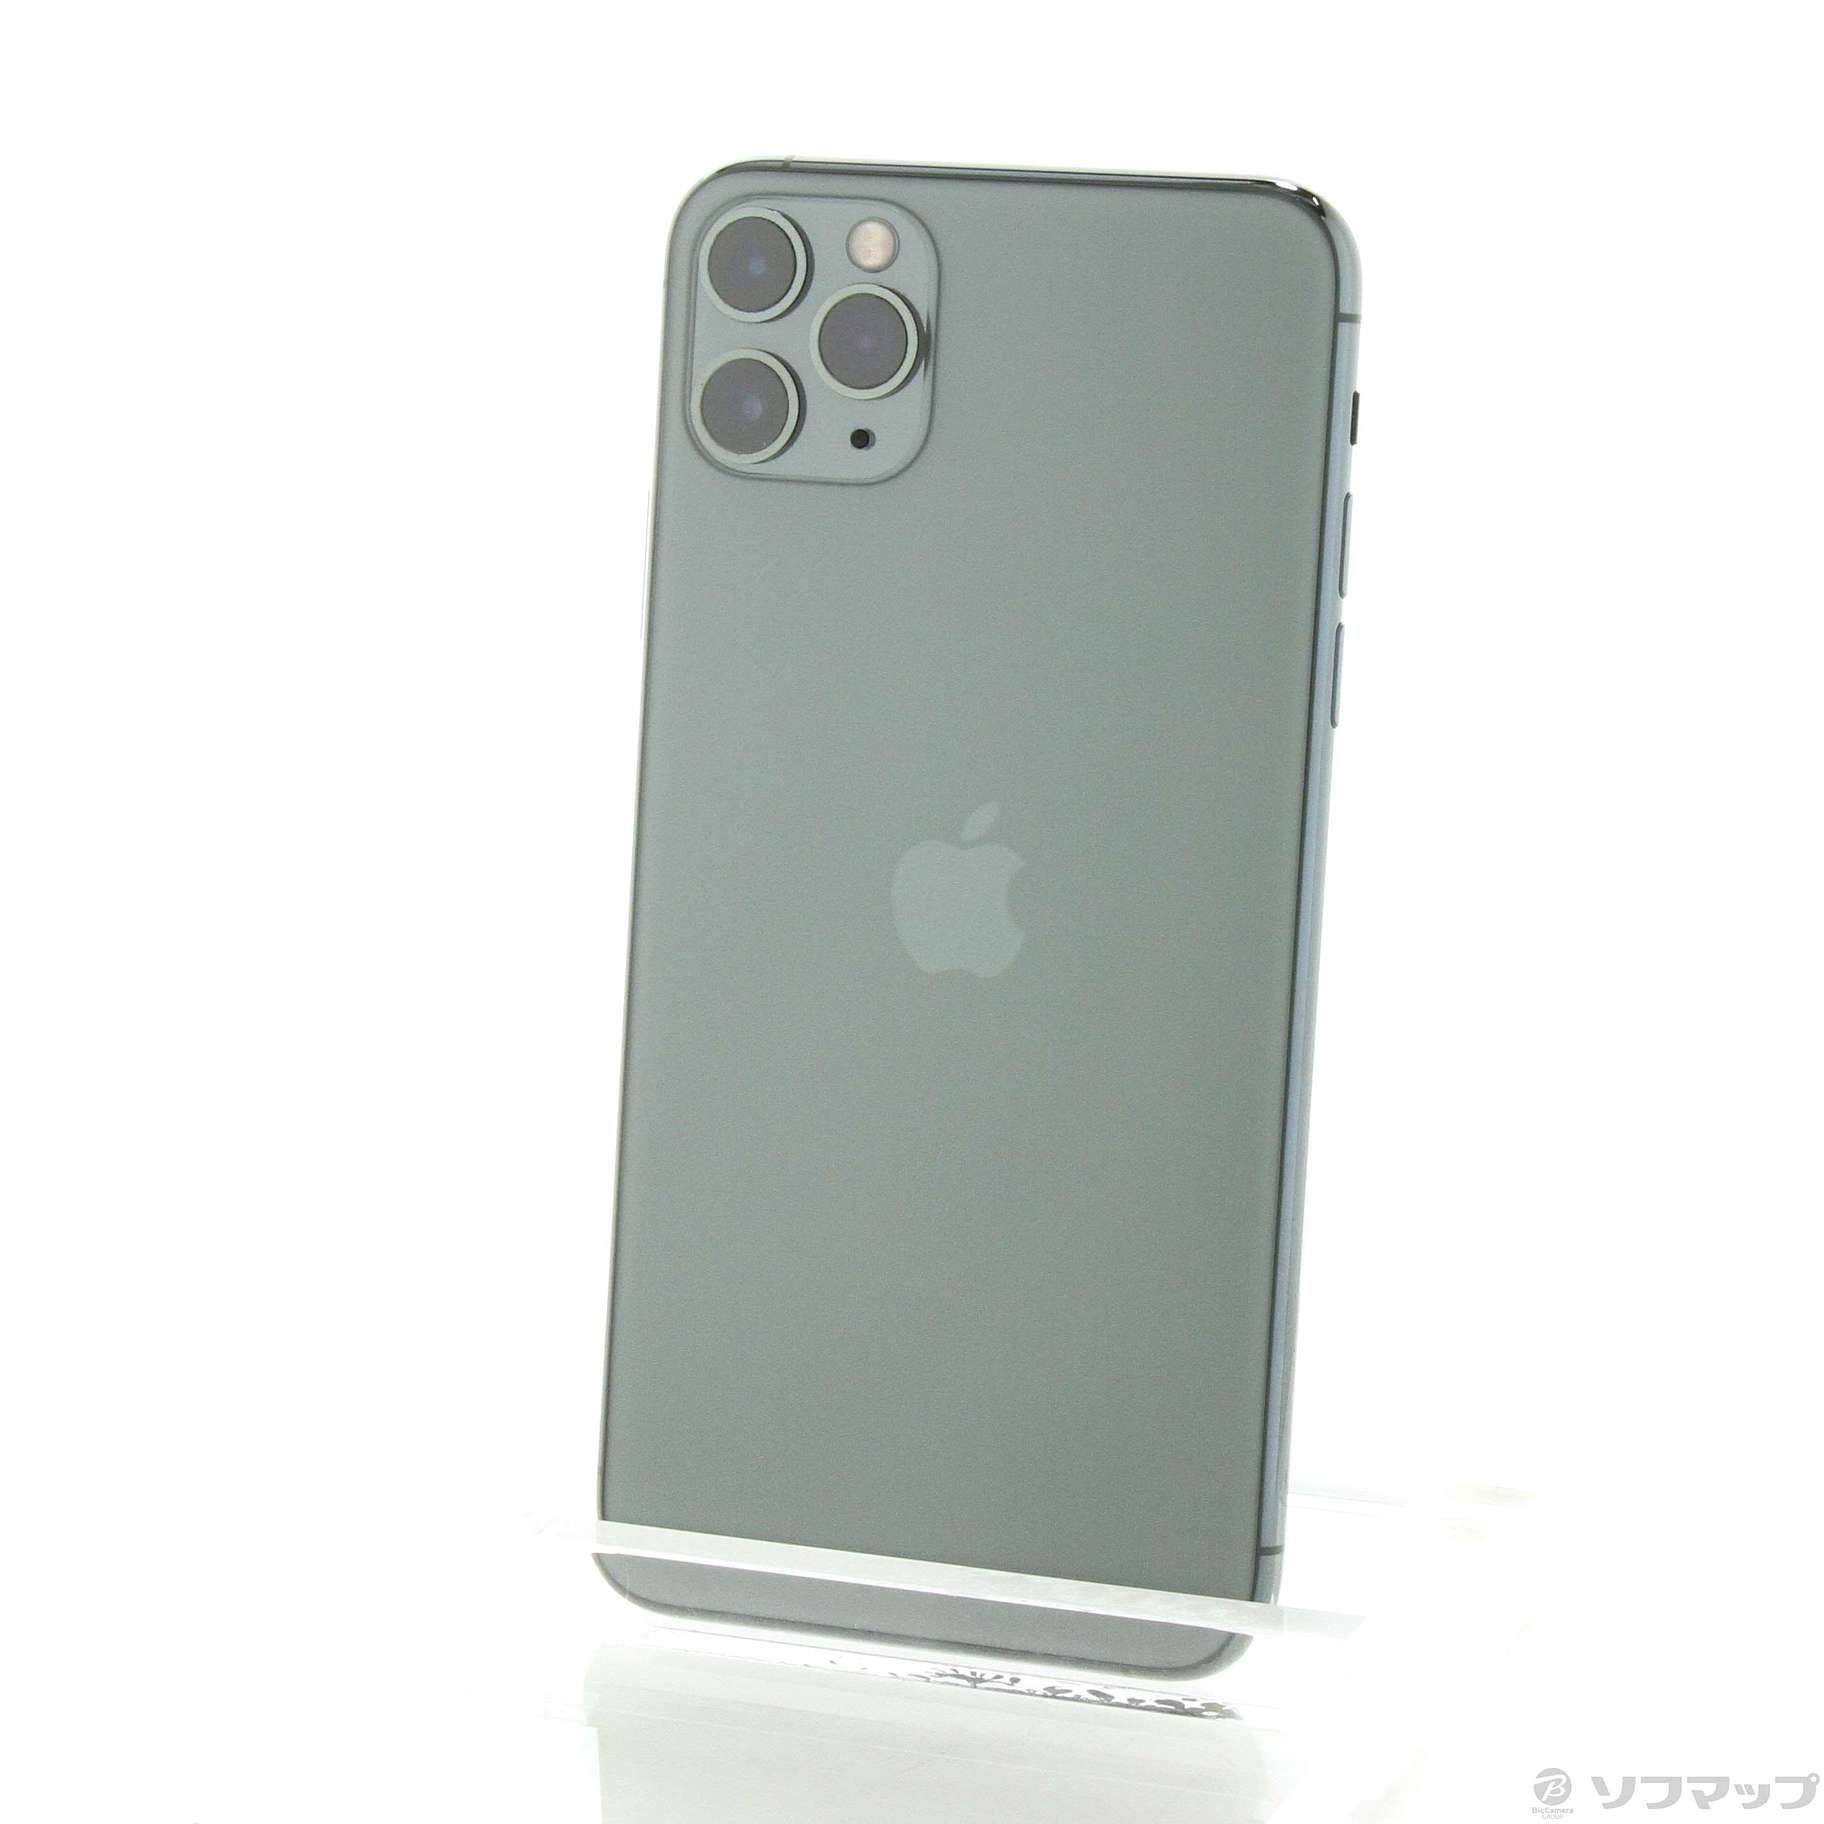 アップル iPhone11 Pro Max 256GB ミッドナイトグリーン a